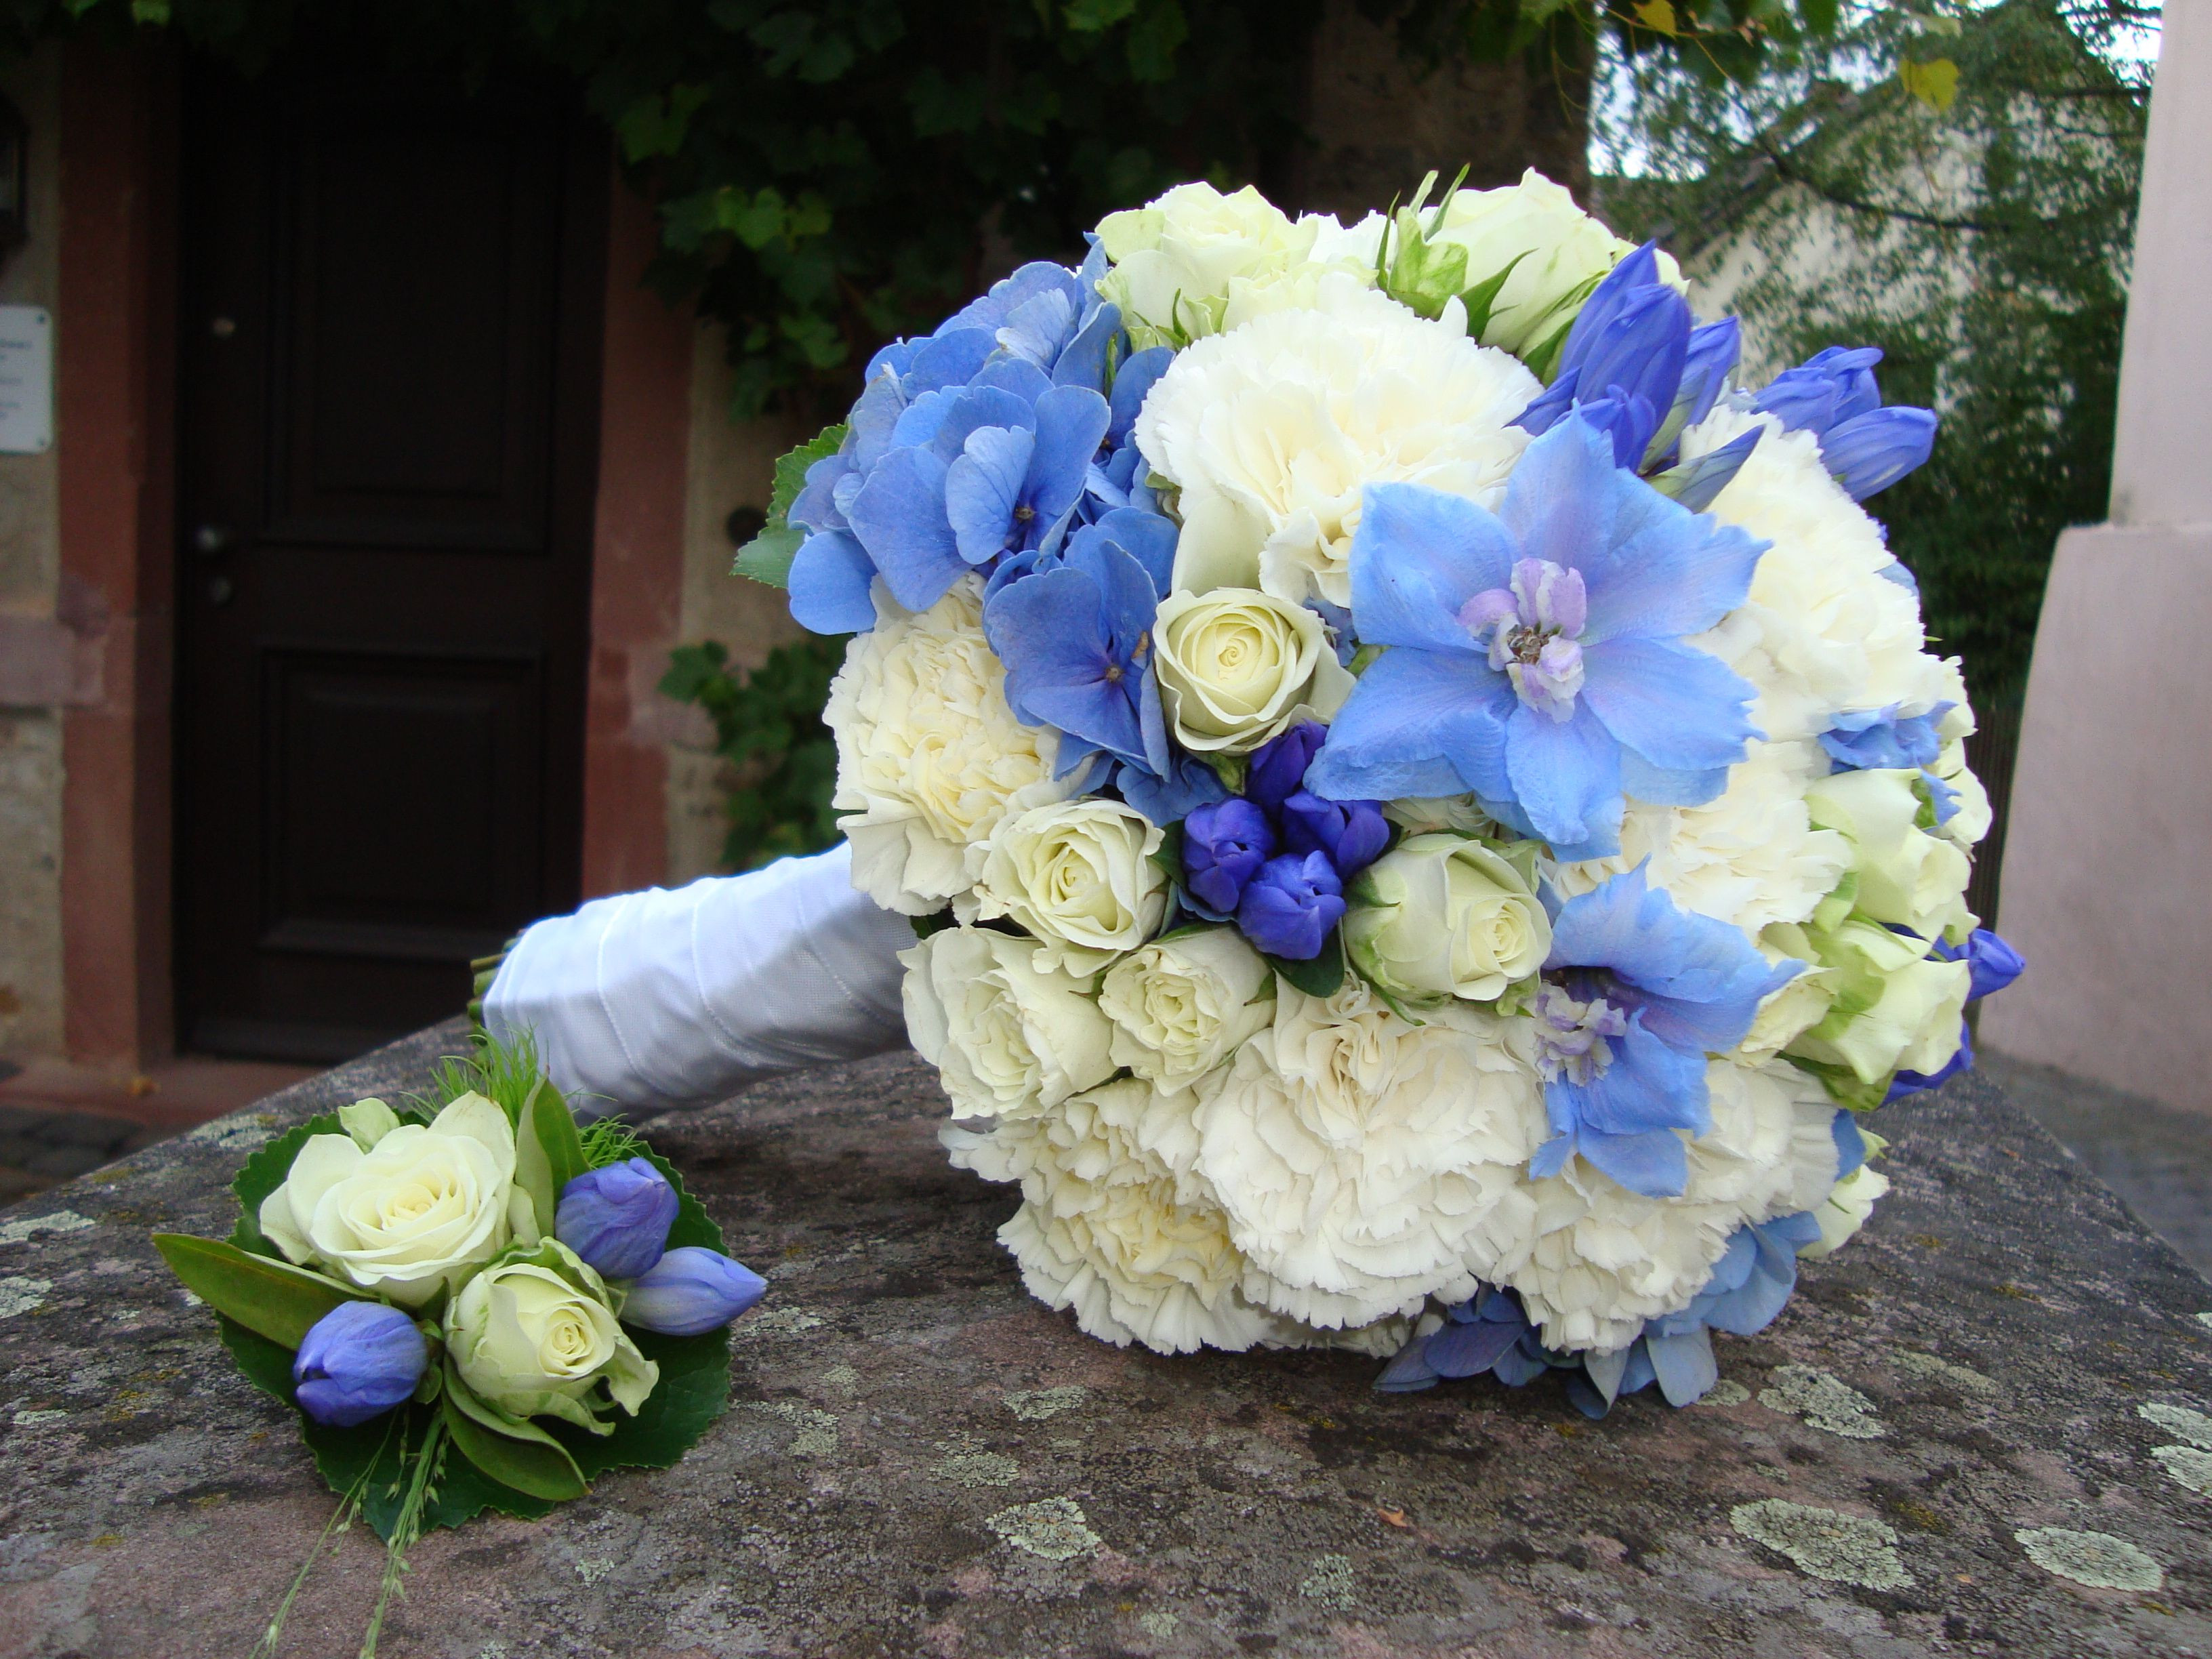 Brautstrauß Blau Weiß
 Brautstrauss weiss blau von FlowerStyle